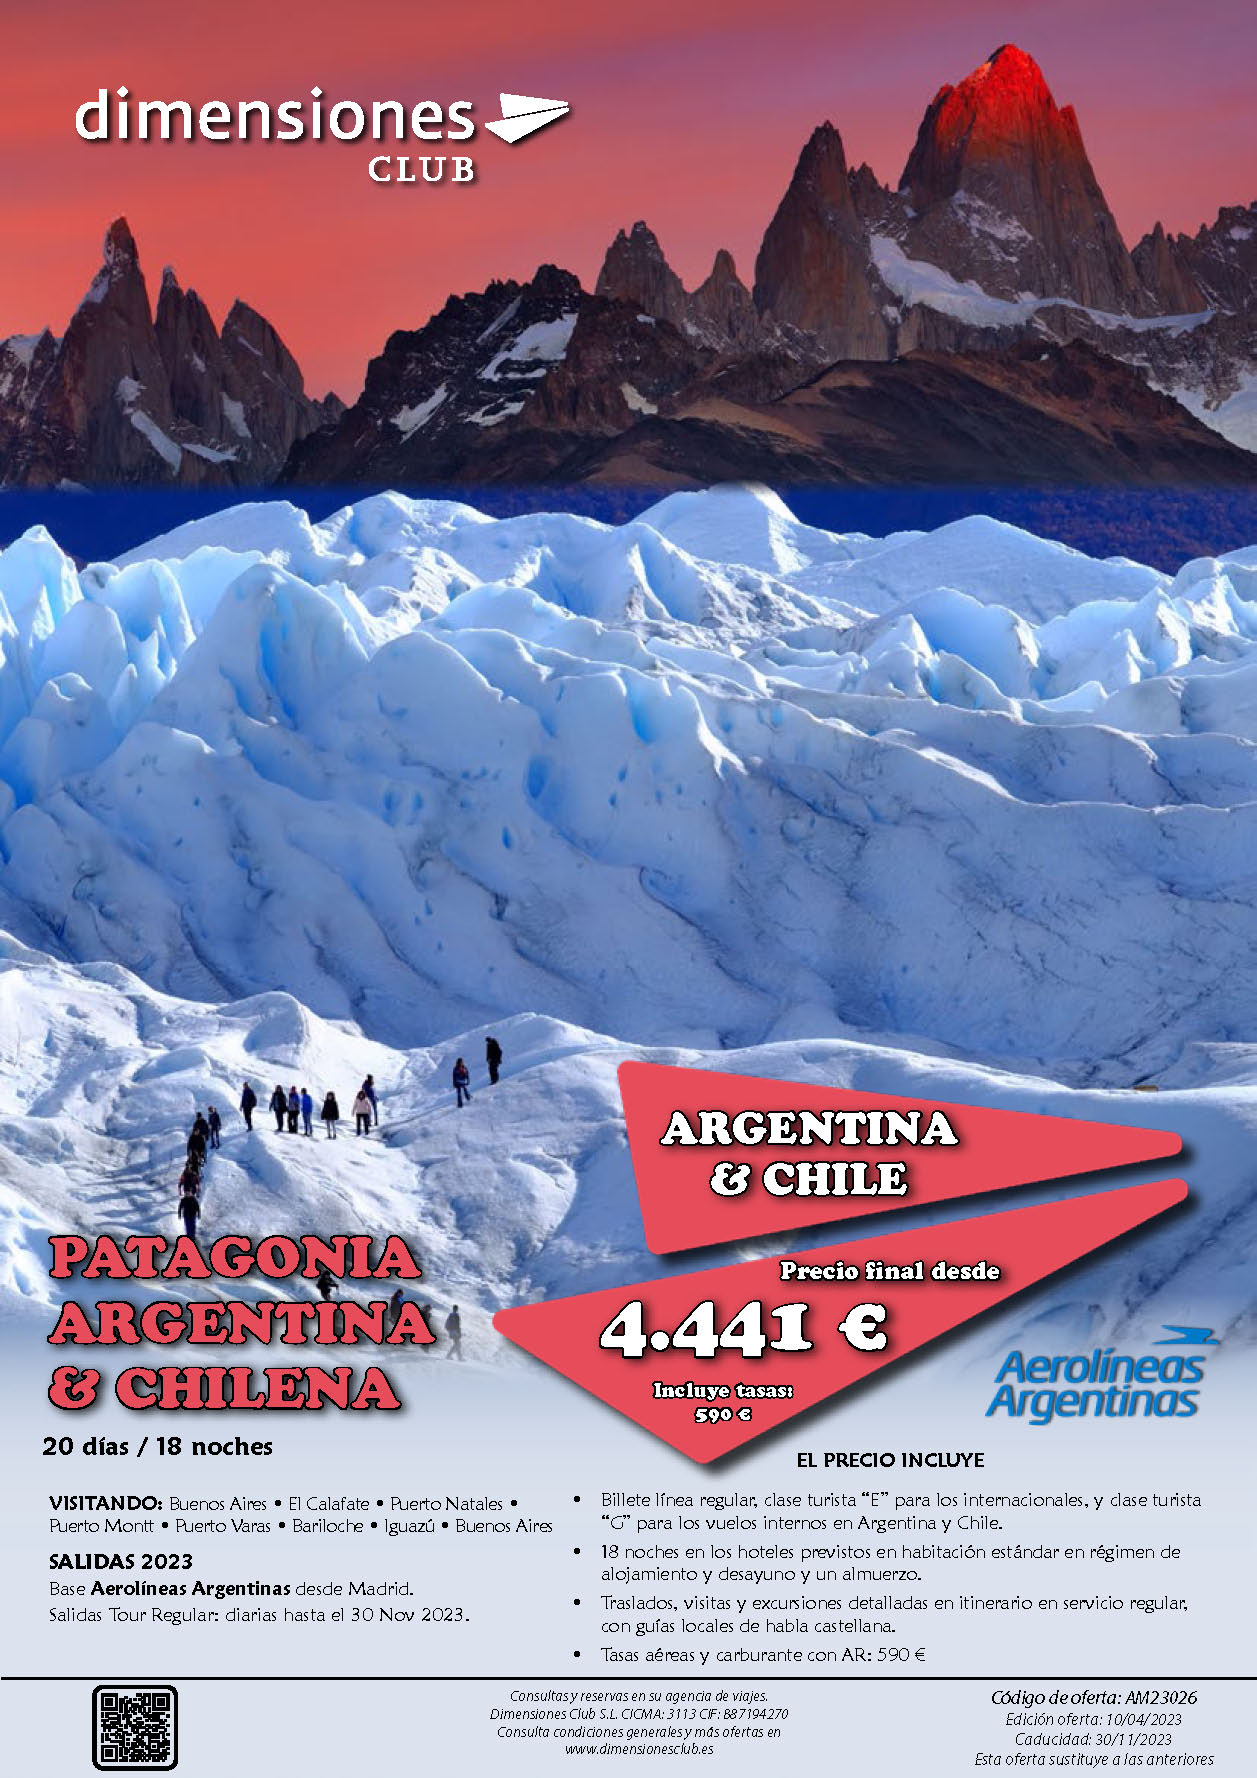 Oferta Dimensiones Club Patagonia Argentina y Chilena 20 dias 2023-2024 salidas desde Madrid Barcelona Bilbao Valencia Malaga